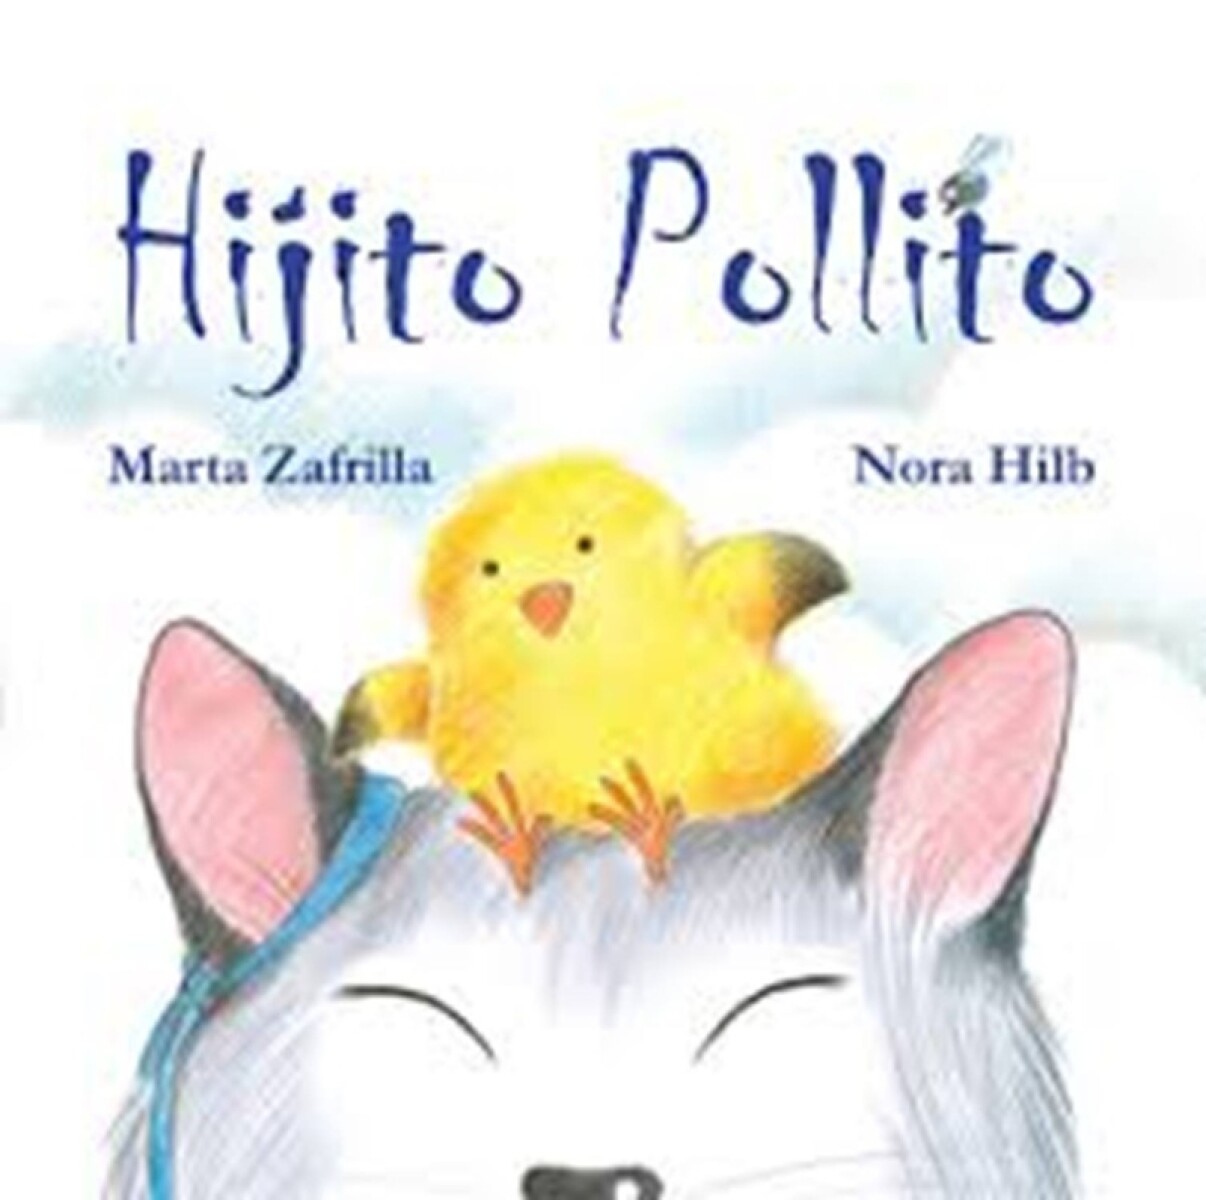 Hijito Pollito 